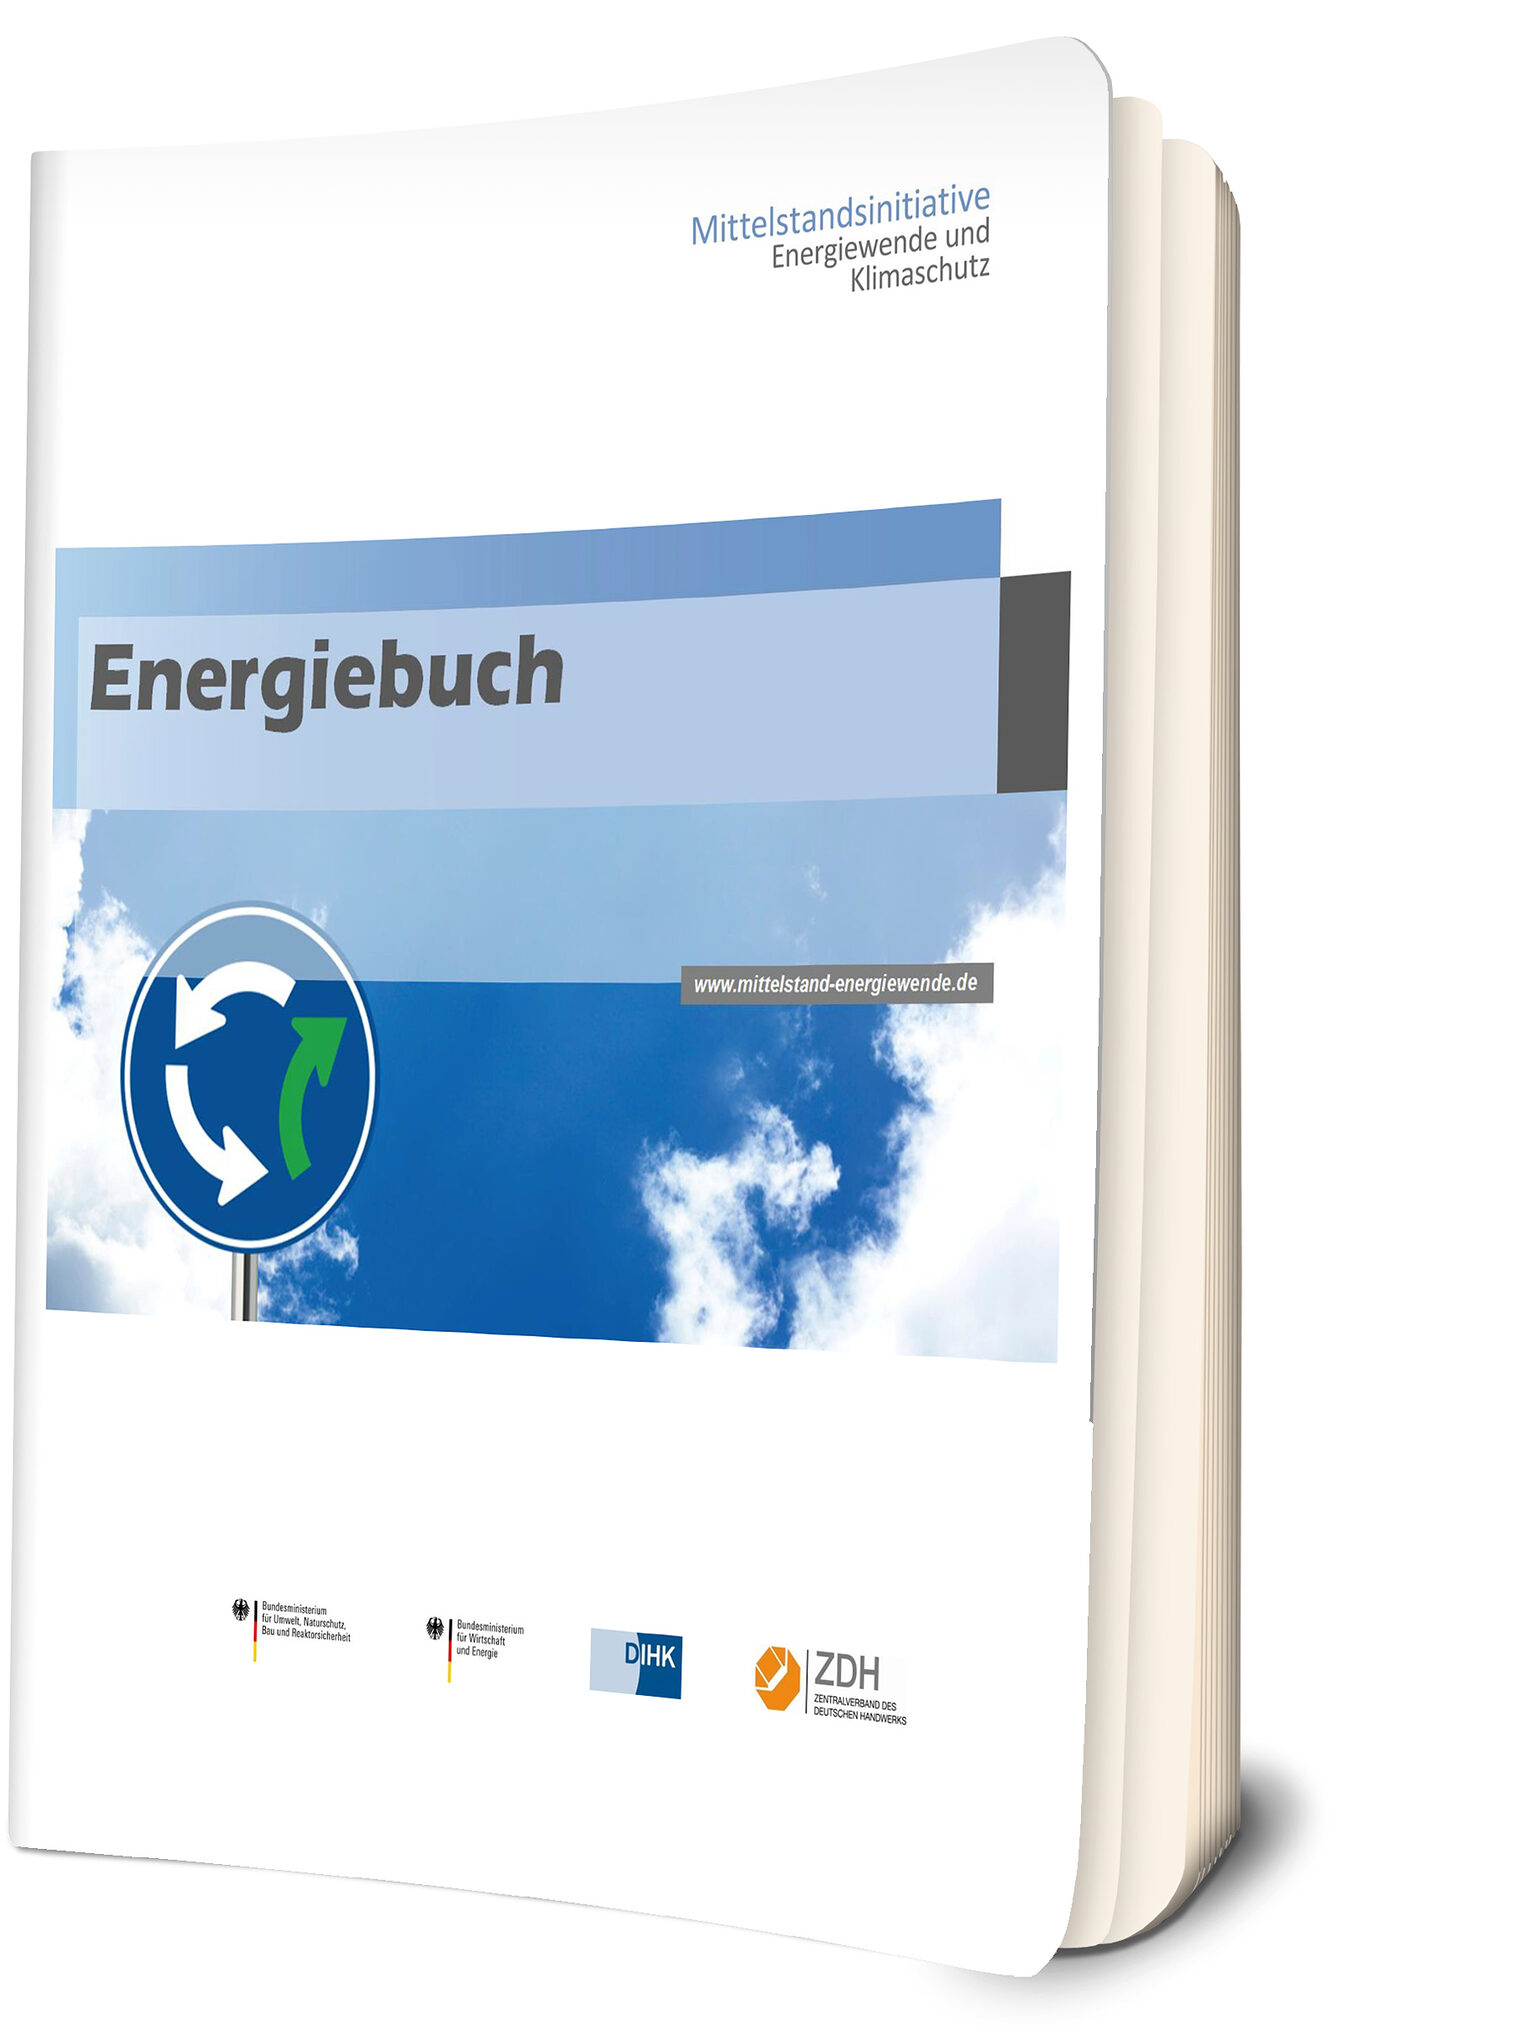 Energiebuch der Mittelstandsinitiative Energiewende und Klimaschutz (MIE). 